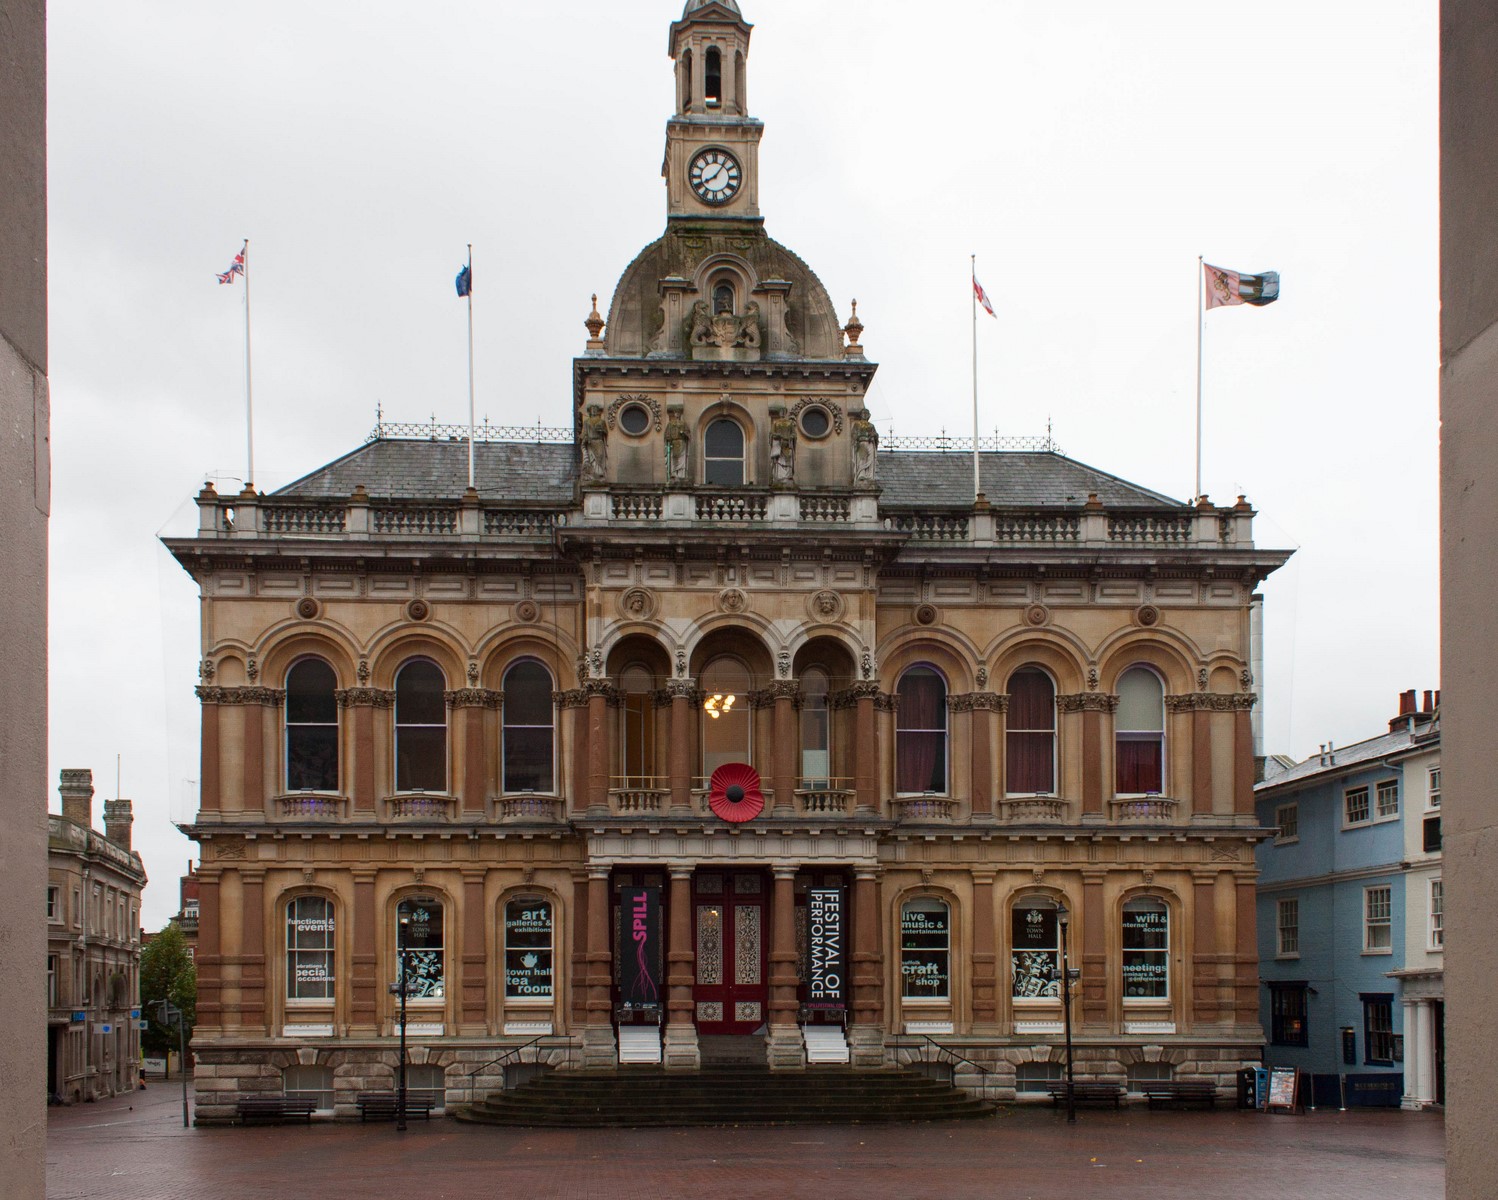 Ipswich town hall